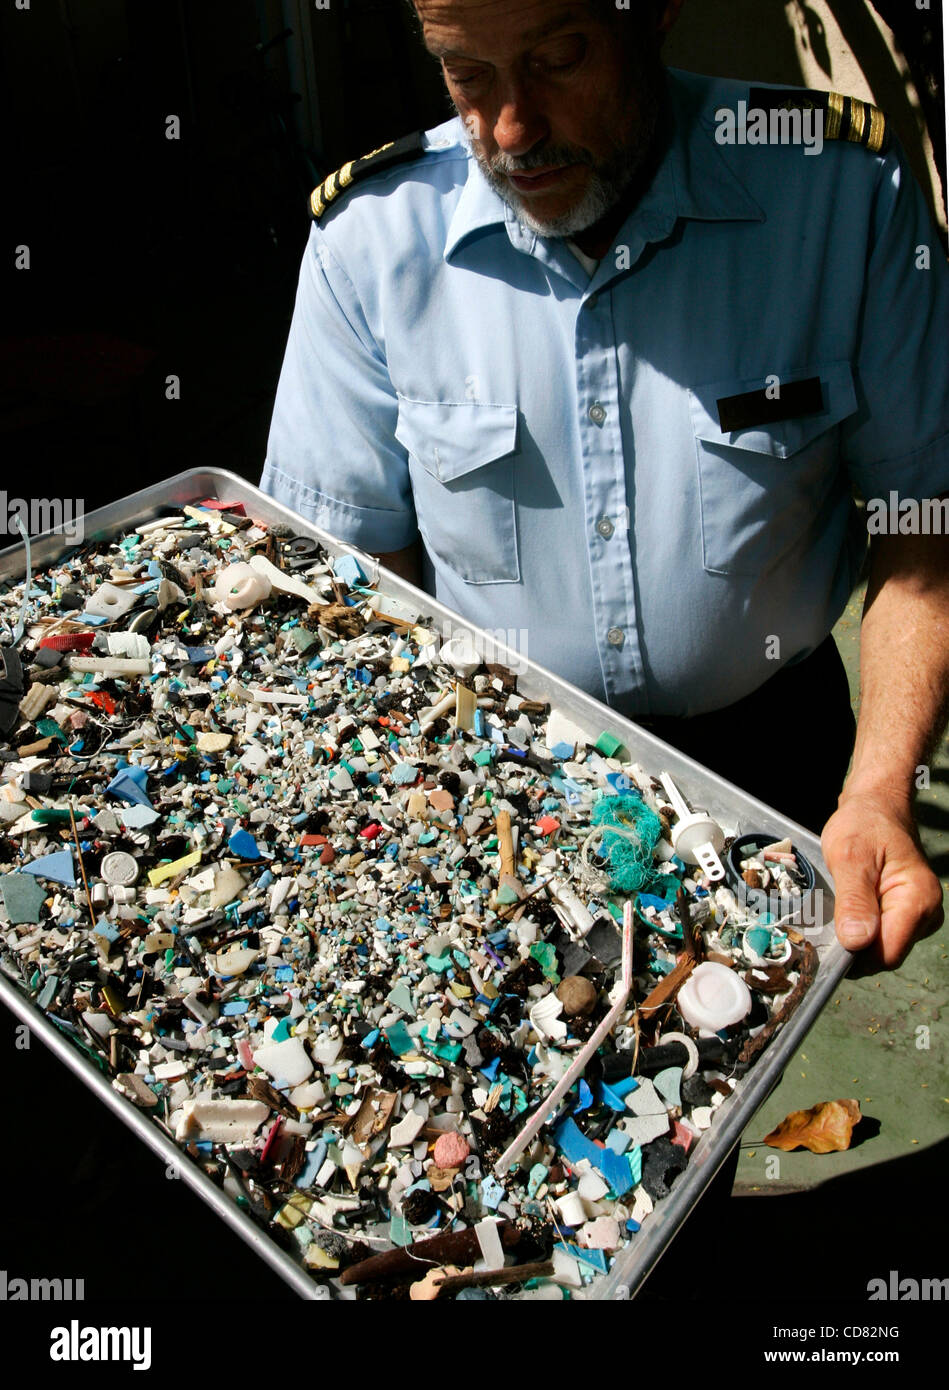 Apr 14, 2008 - Long Beach, CA, USA CHARLES Moore est titulaire d'un bac de débris recueillis sur une plage à Hawaii vers le rivage de la "Grande Plaque de déchets du Pacifique". Moore est un chercheur marine crédité de la découverte de la "Grande Plaque de déchets du Pacifique", une décharge flottante de la taille d'Australi Banque D'Images